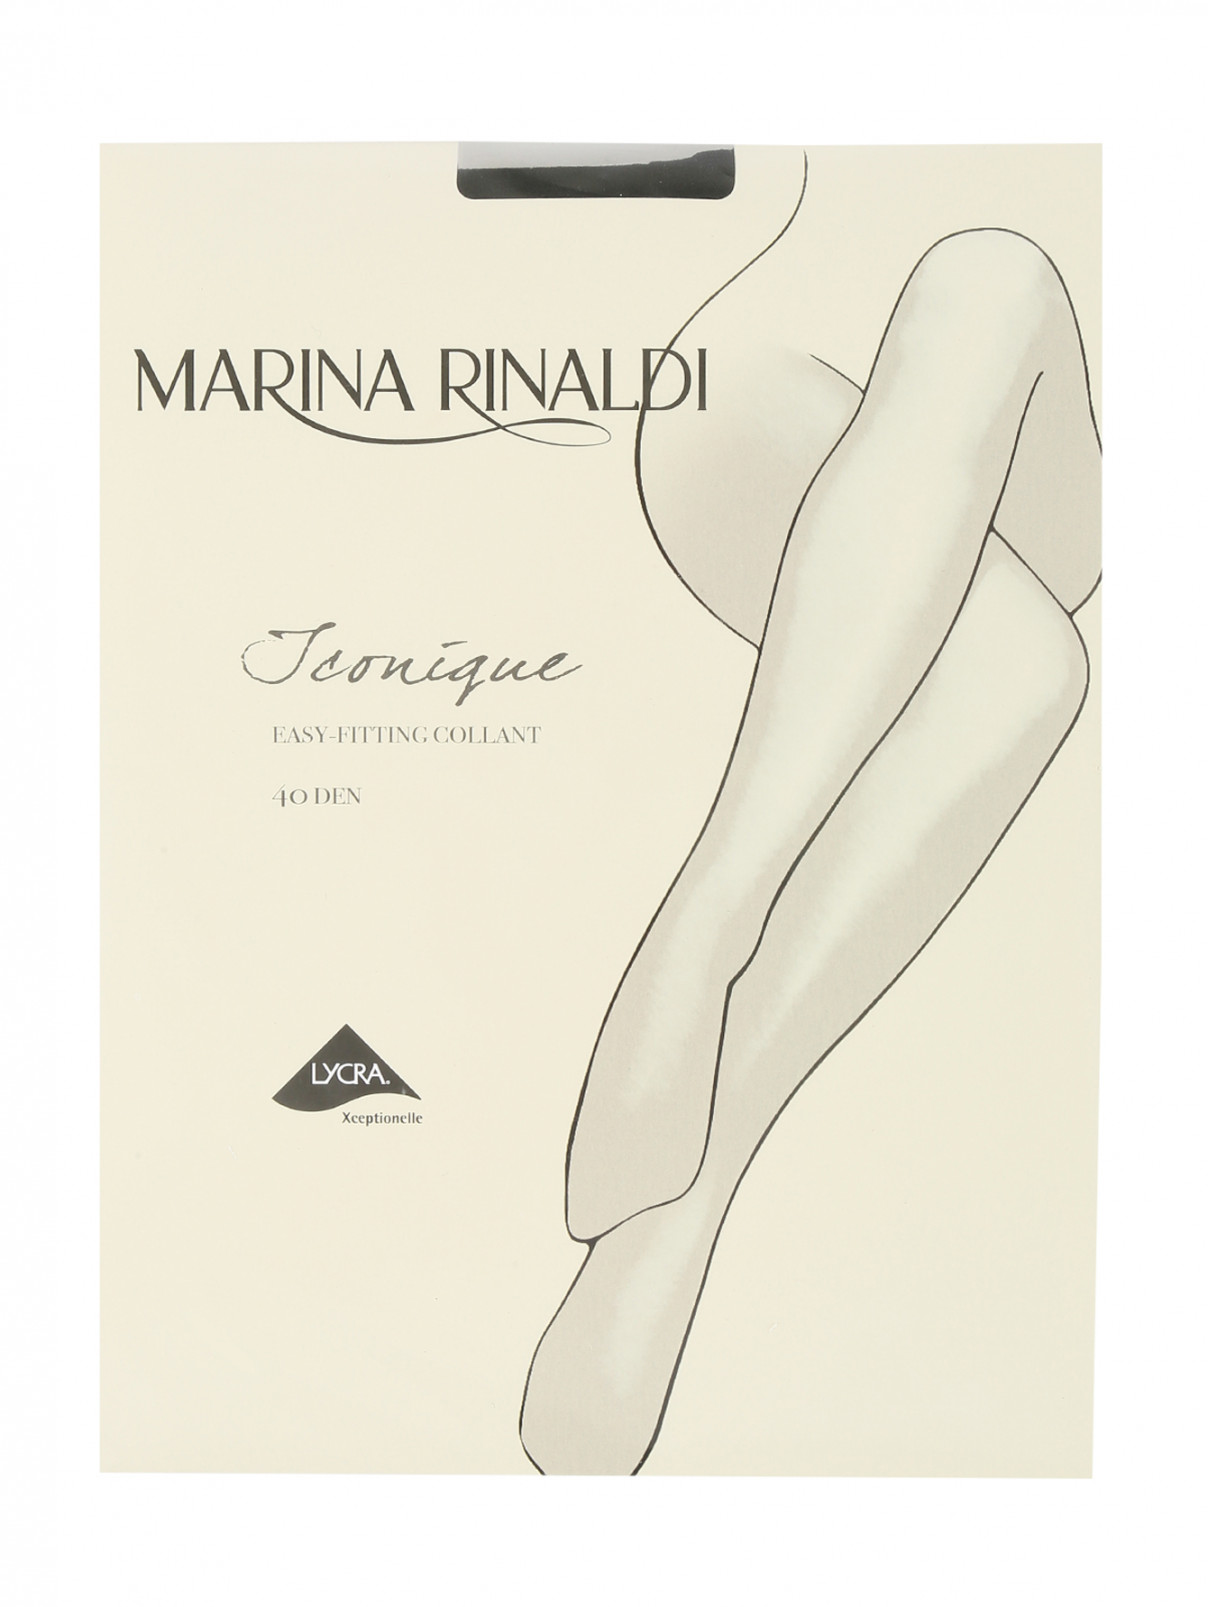 Колготки 40 DEN Marina Rinaldi  –  Общий вид  – Цвет:  Черный